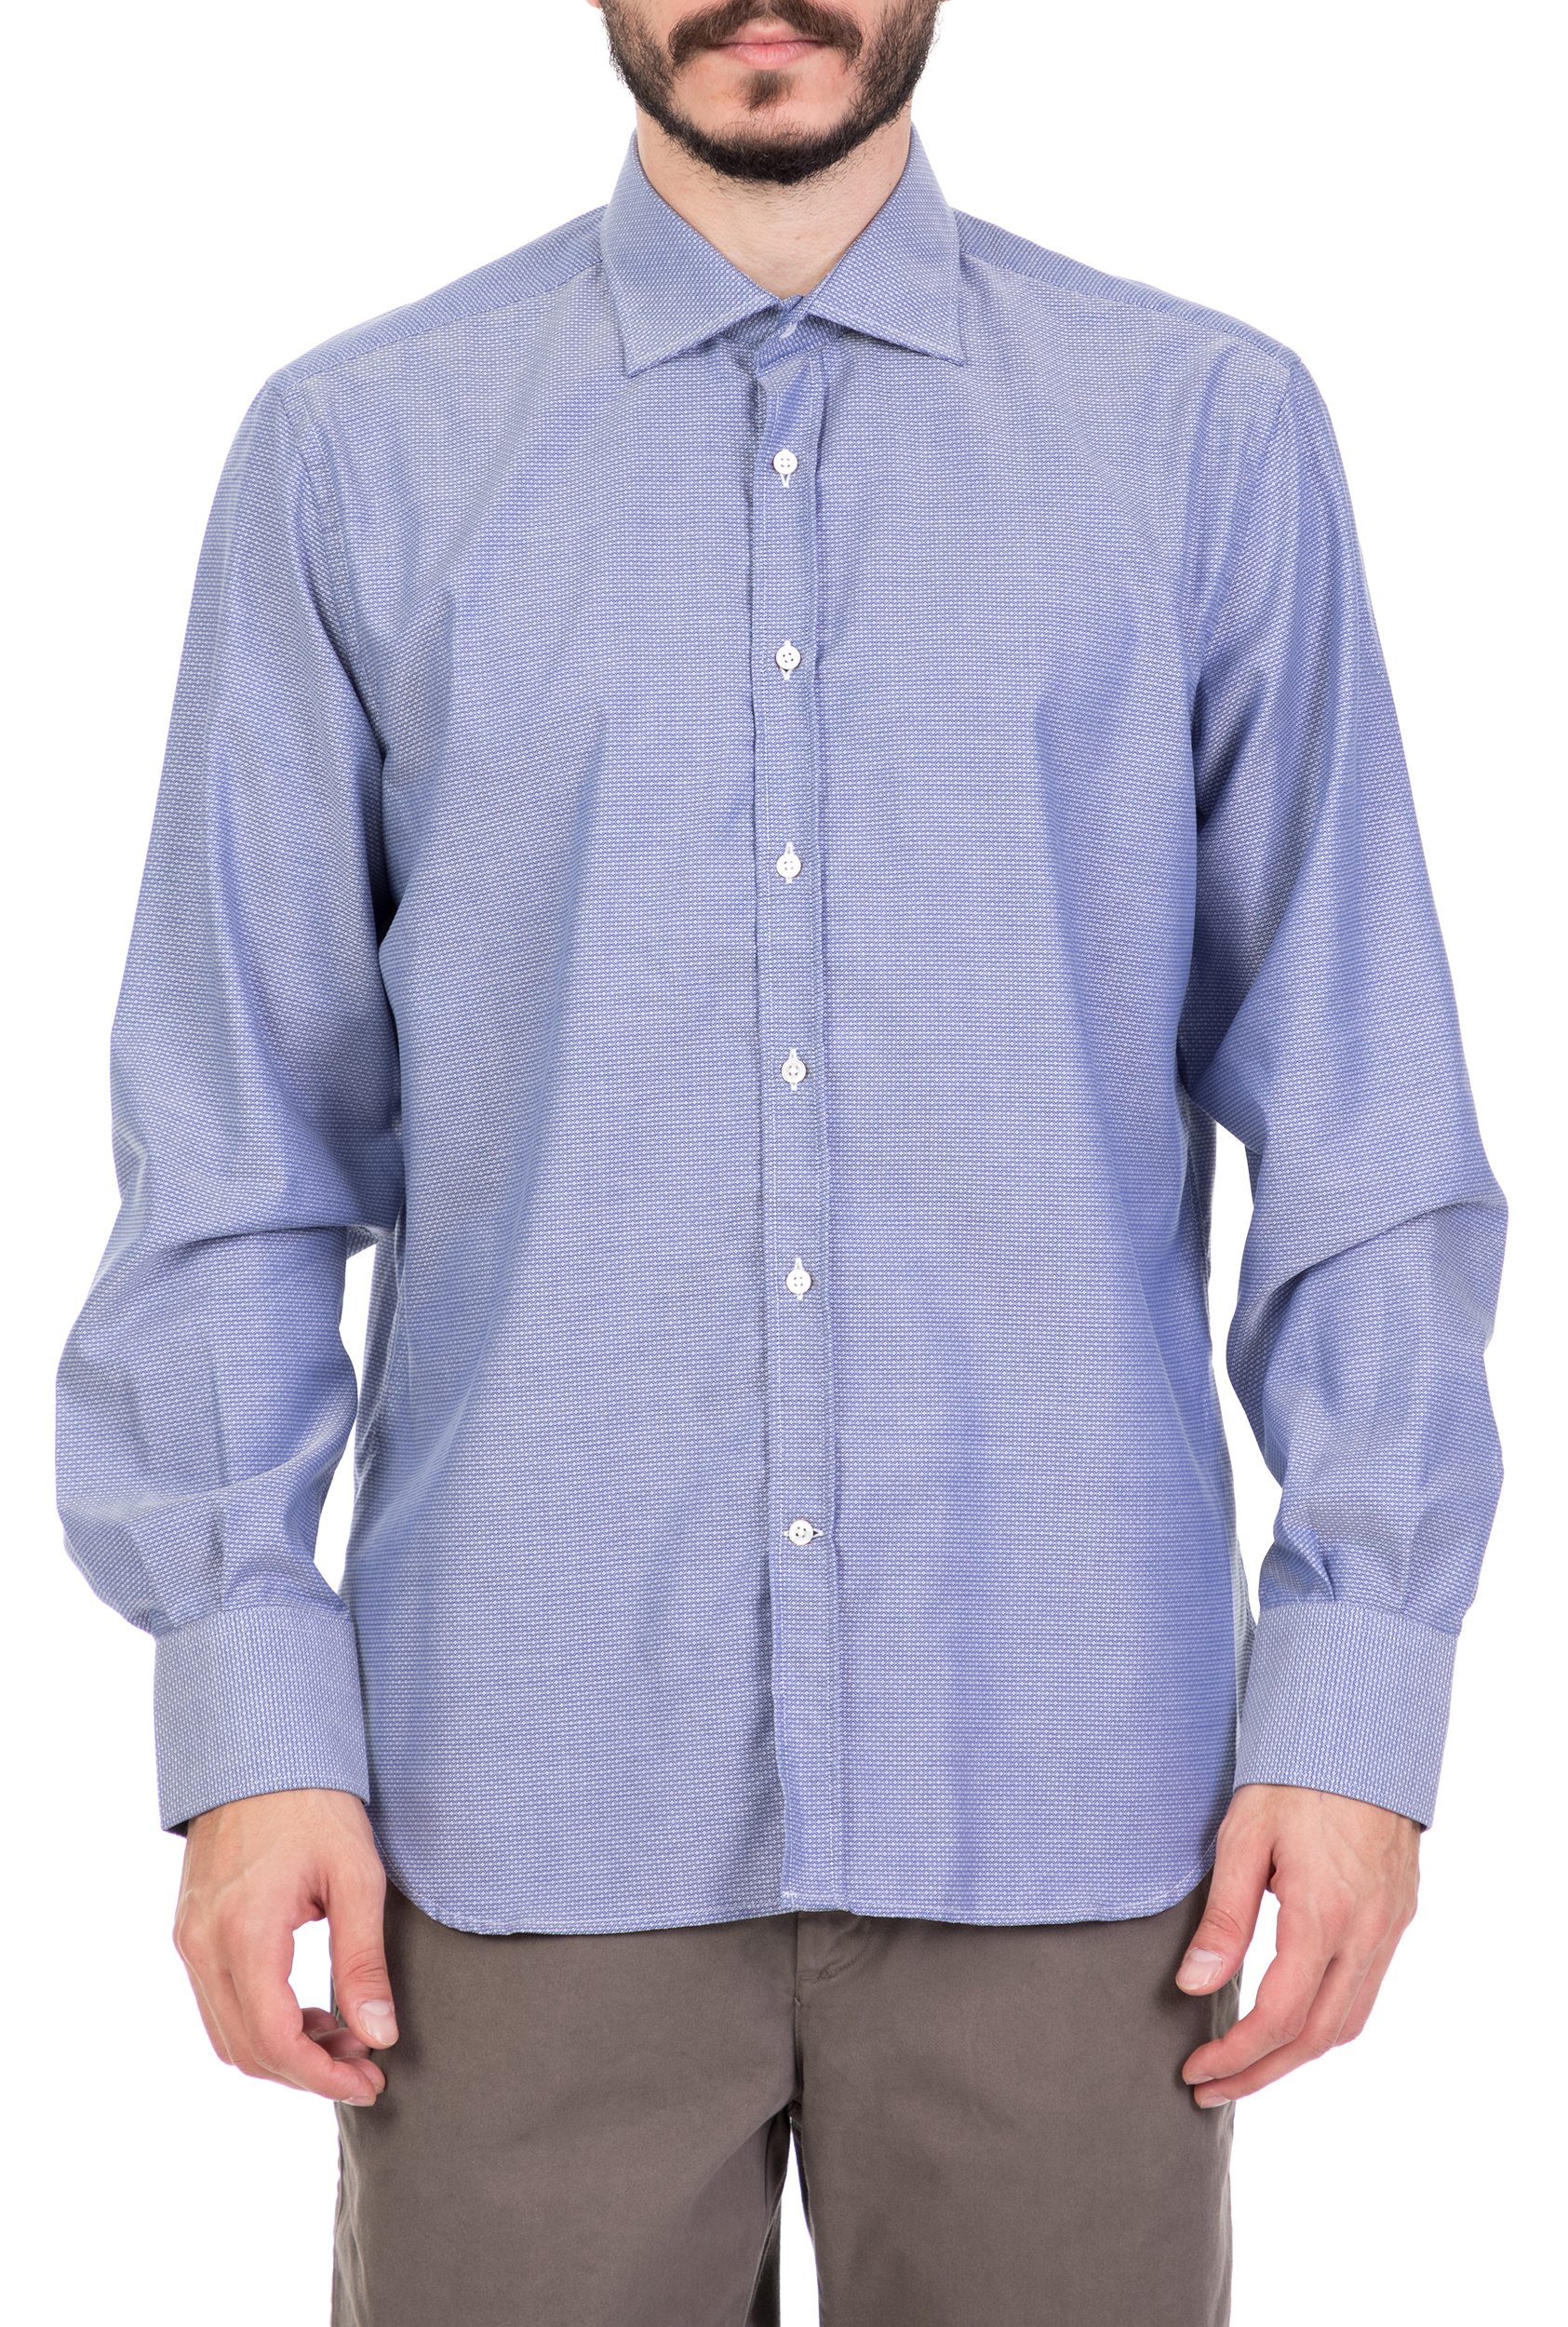 BROOKSFIELD - Ανδρικό μακρυμάνικο πουκάμισο BROOKSFIELD γαλάζιο Ανδρικά/Ρούχα/Πουκάμισα/Μακρυμάνικα